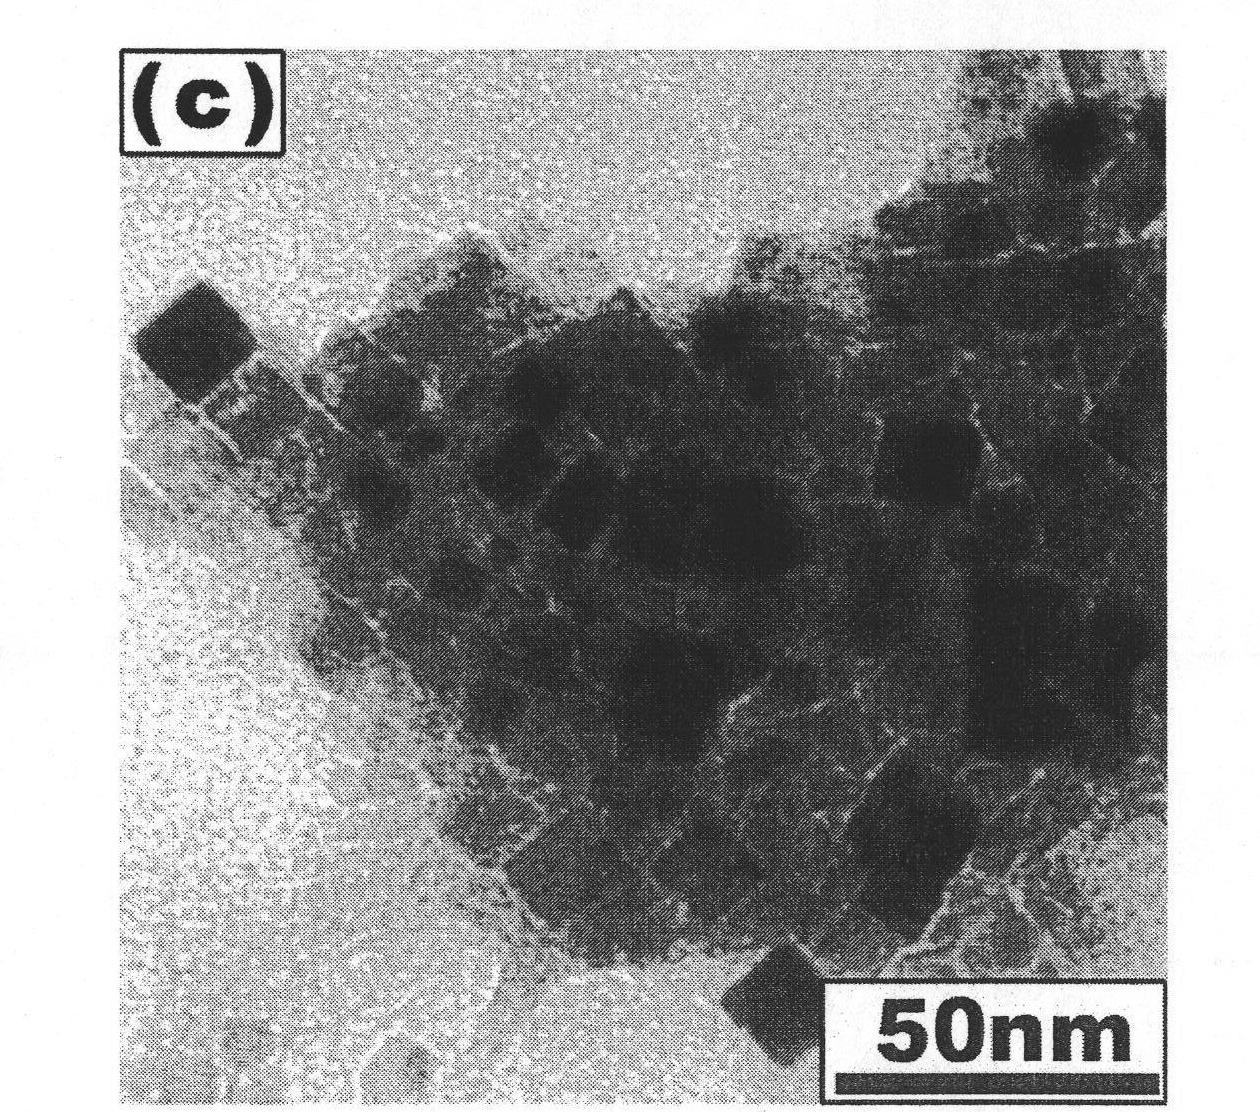 Method for preparing nanometer barium-strontium titanate powder